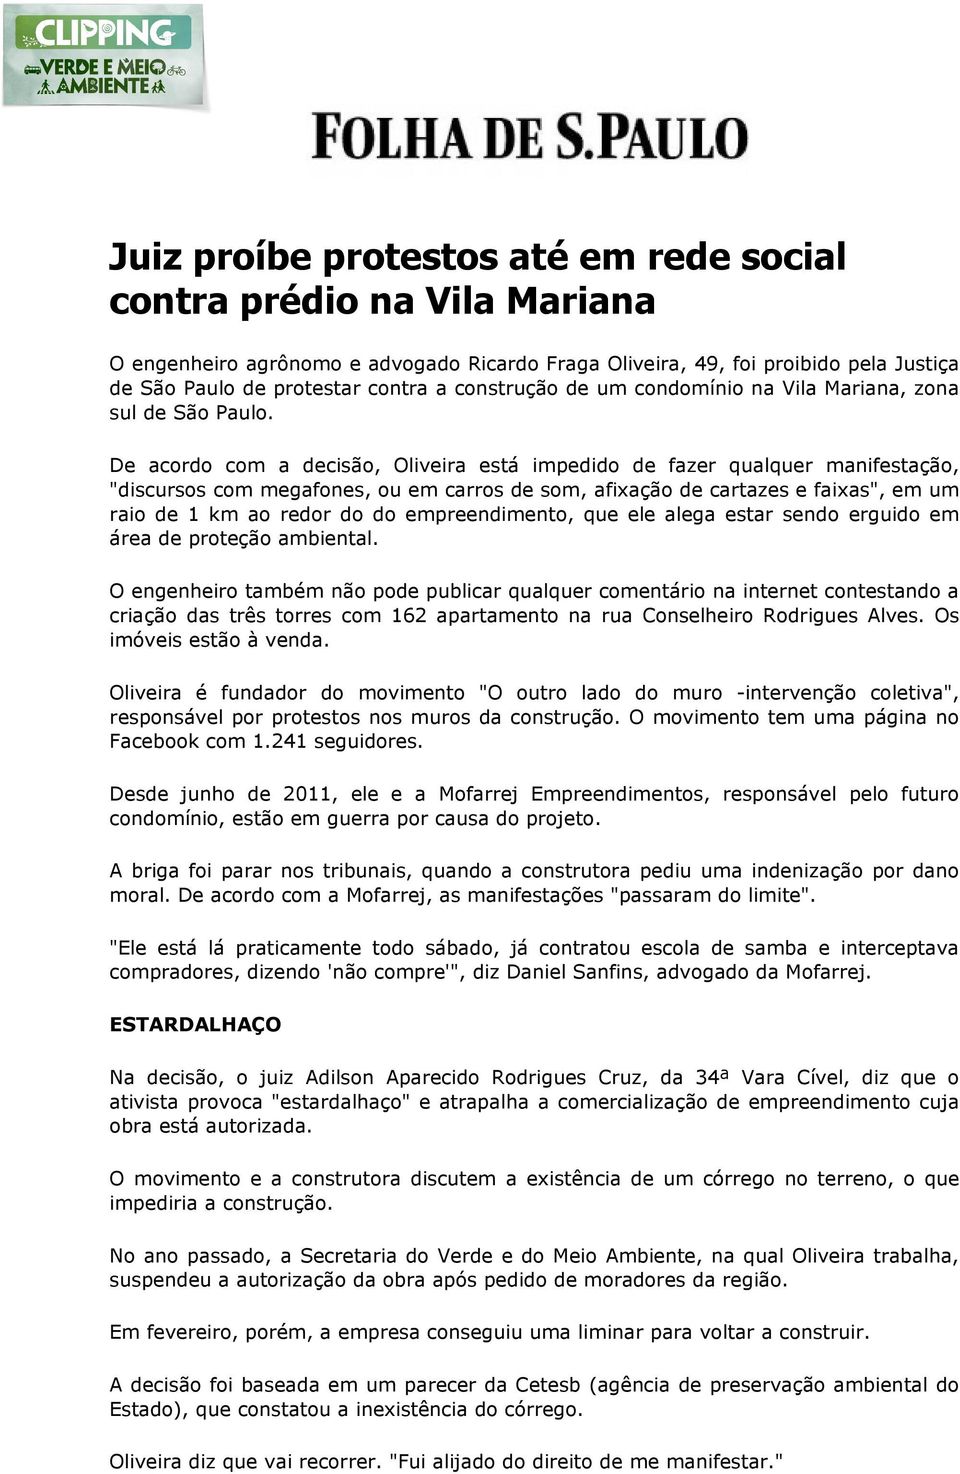 De acordo com a decisão, Oliveira está impedido de fazer qualquer manifestação, "discursos com megafones, ou em carros de som, afixação de cartazes e faixas", em um raio de 1 km ao redor do do